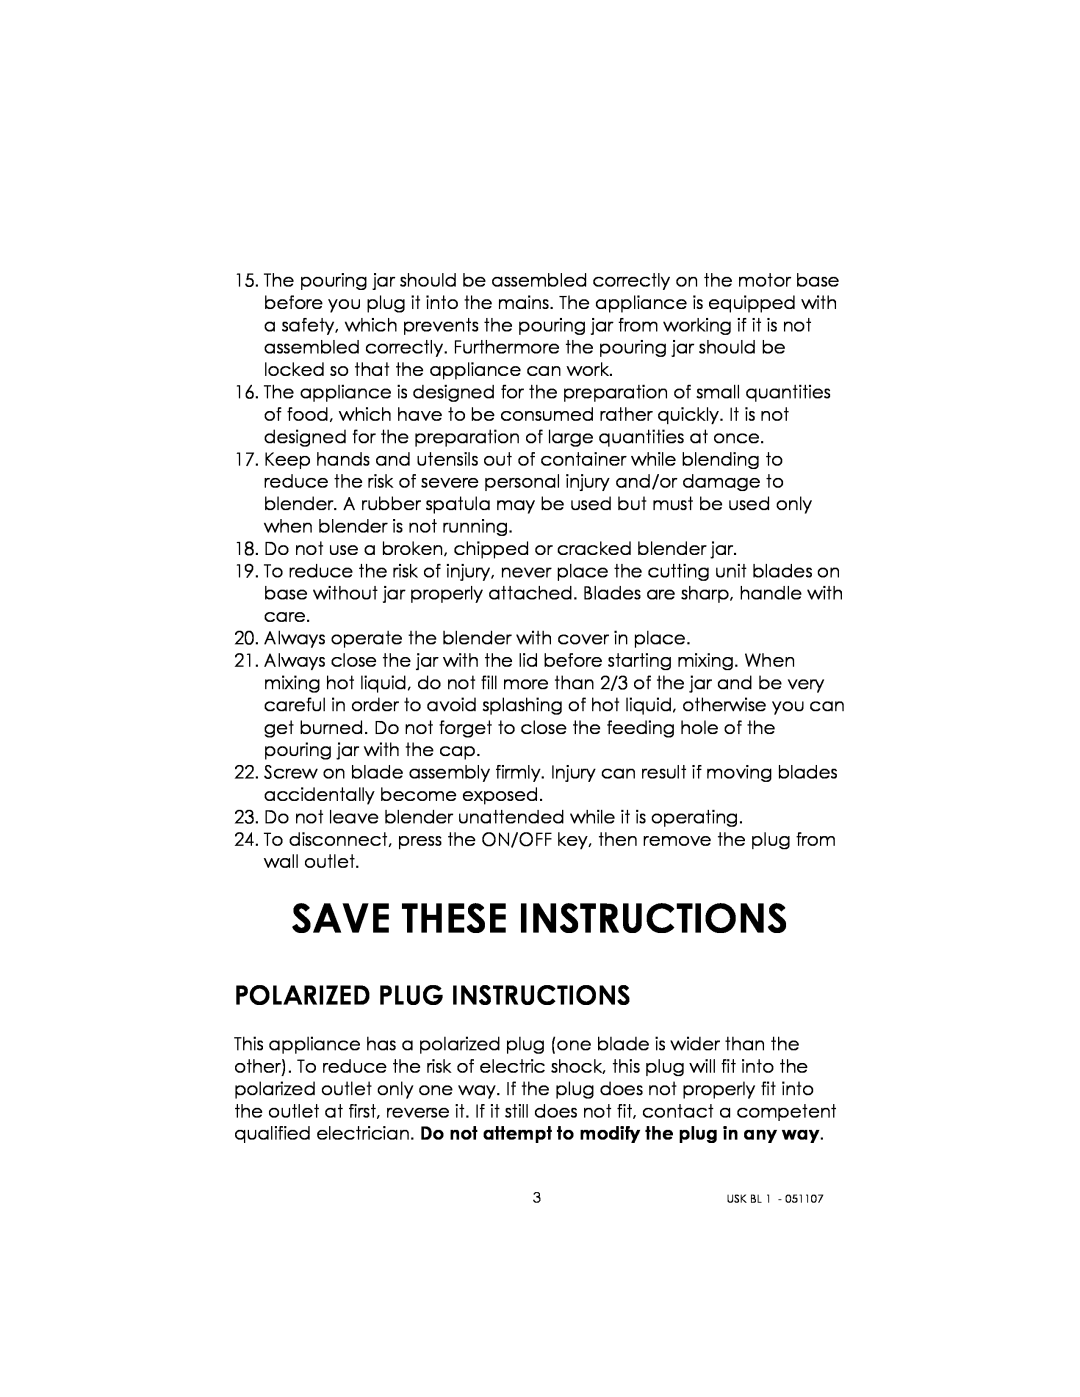 Kalorik USK BL 1 manual Save These Instructions, Polarized Plug Instructions 